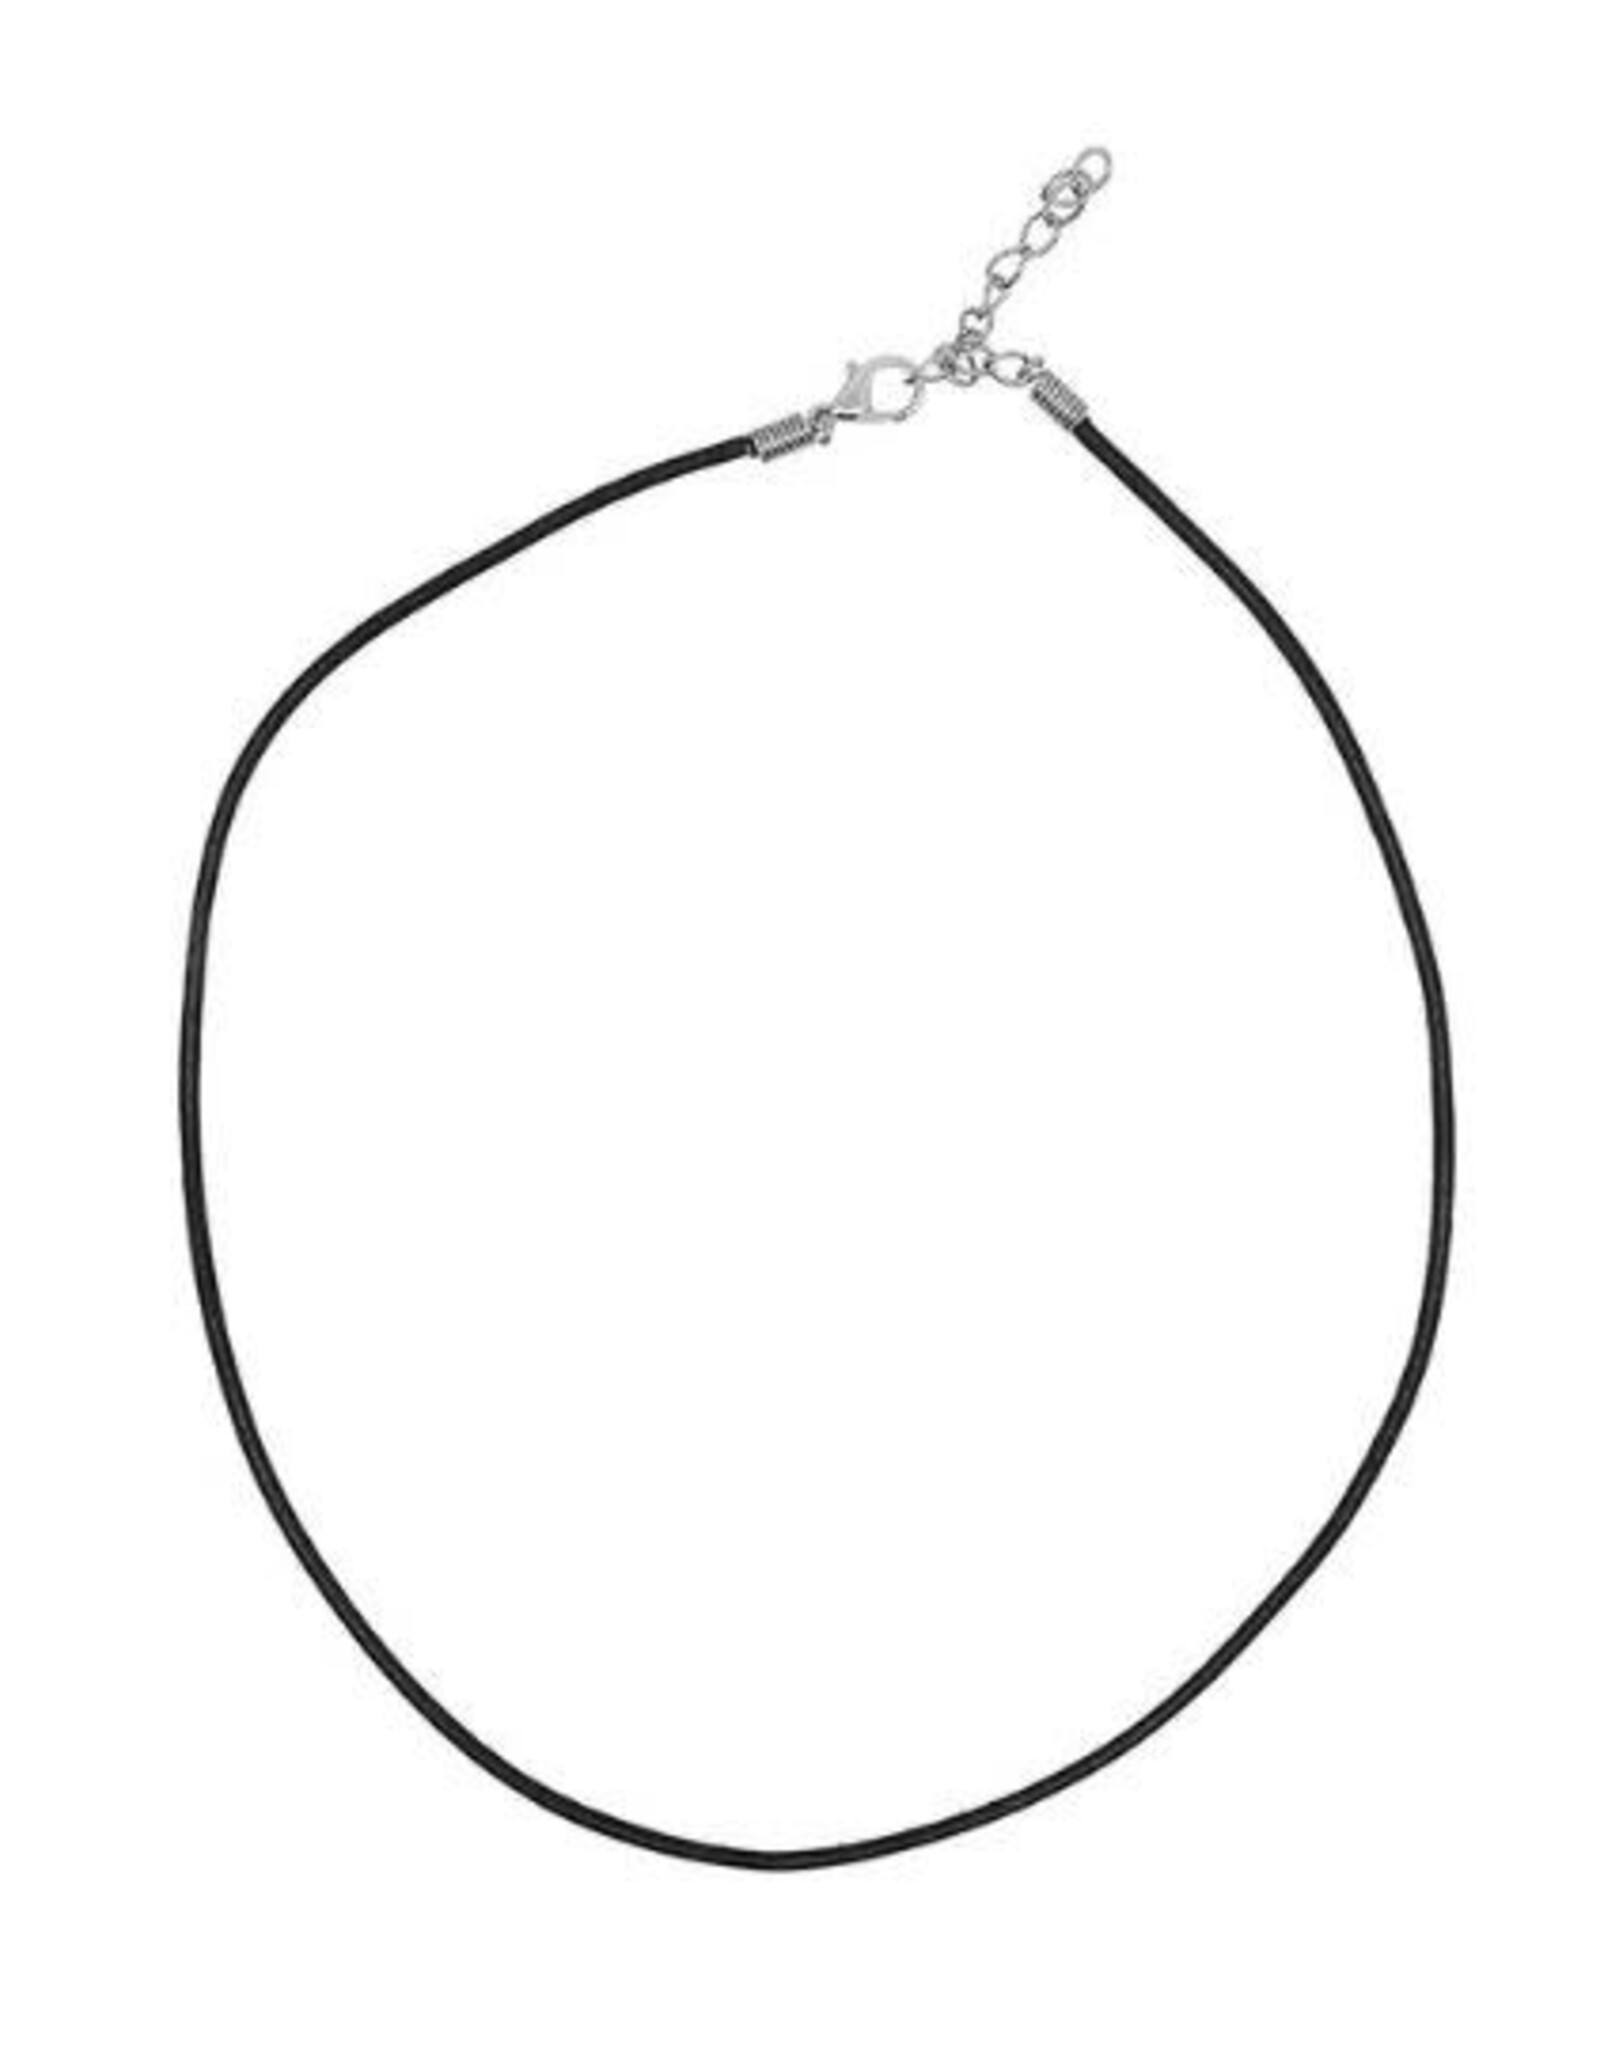 Black Faux Leather Necklace - 19"